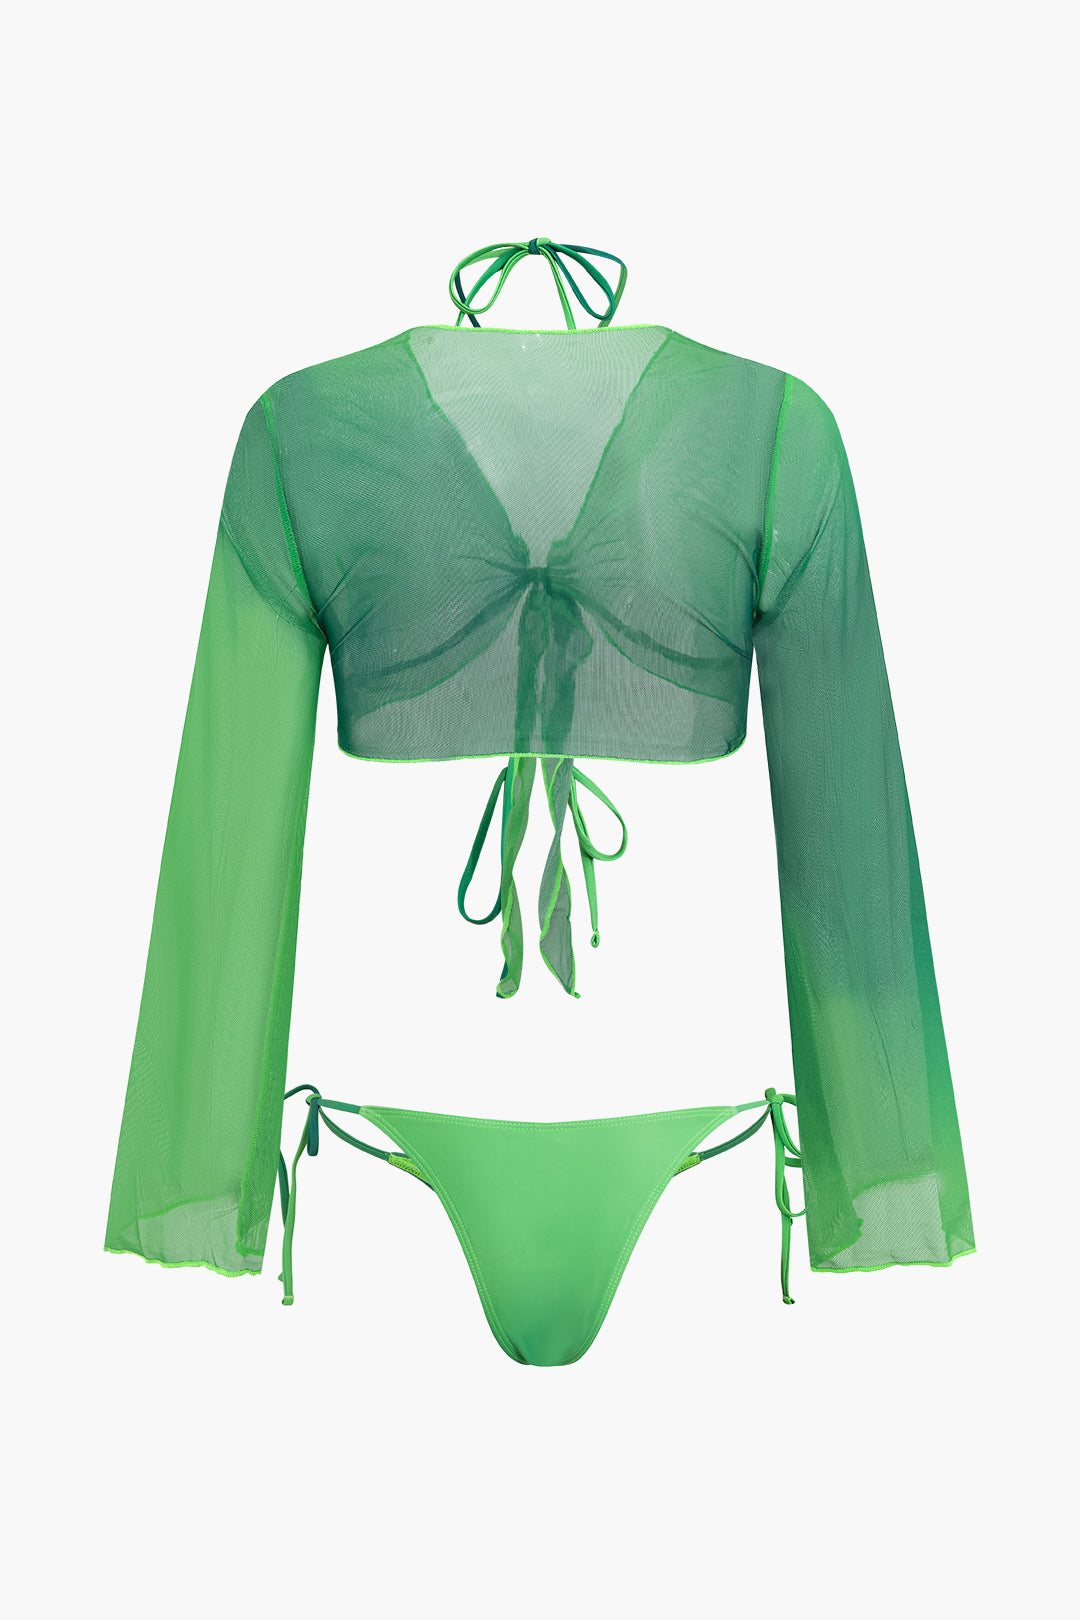 Ombre Contrast Cross Tie Halter Bikini 3-Piece Sets